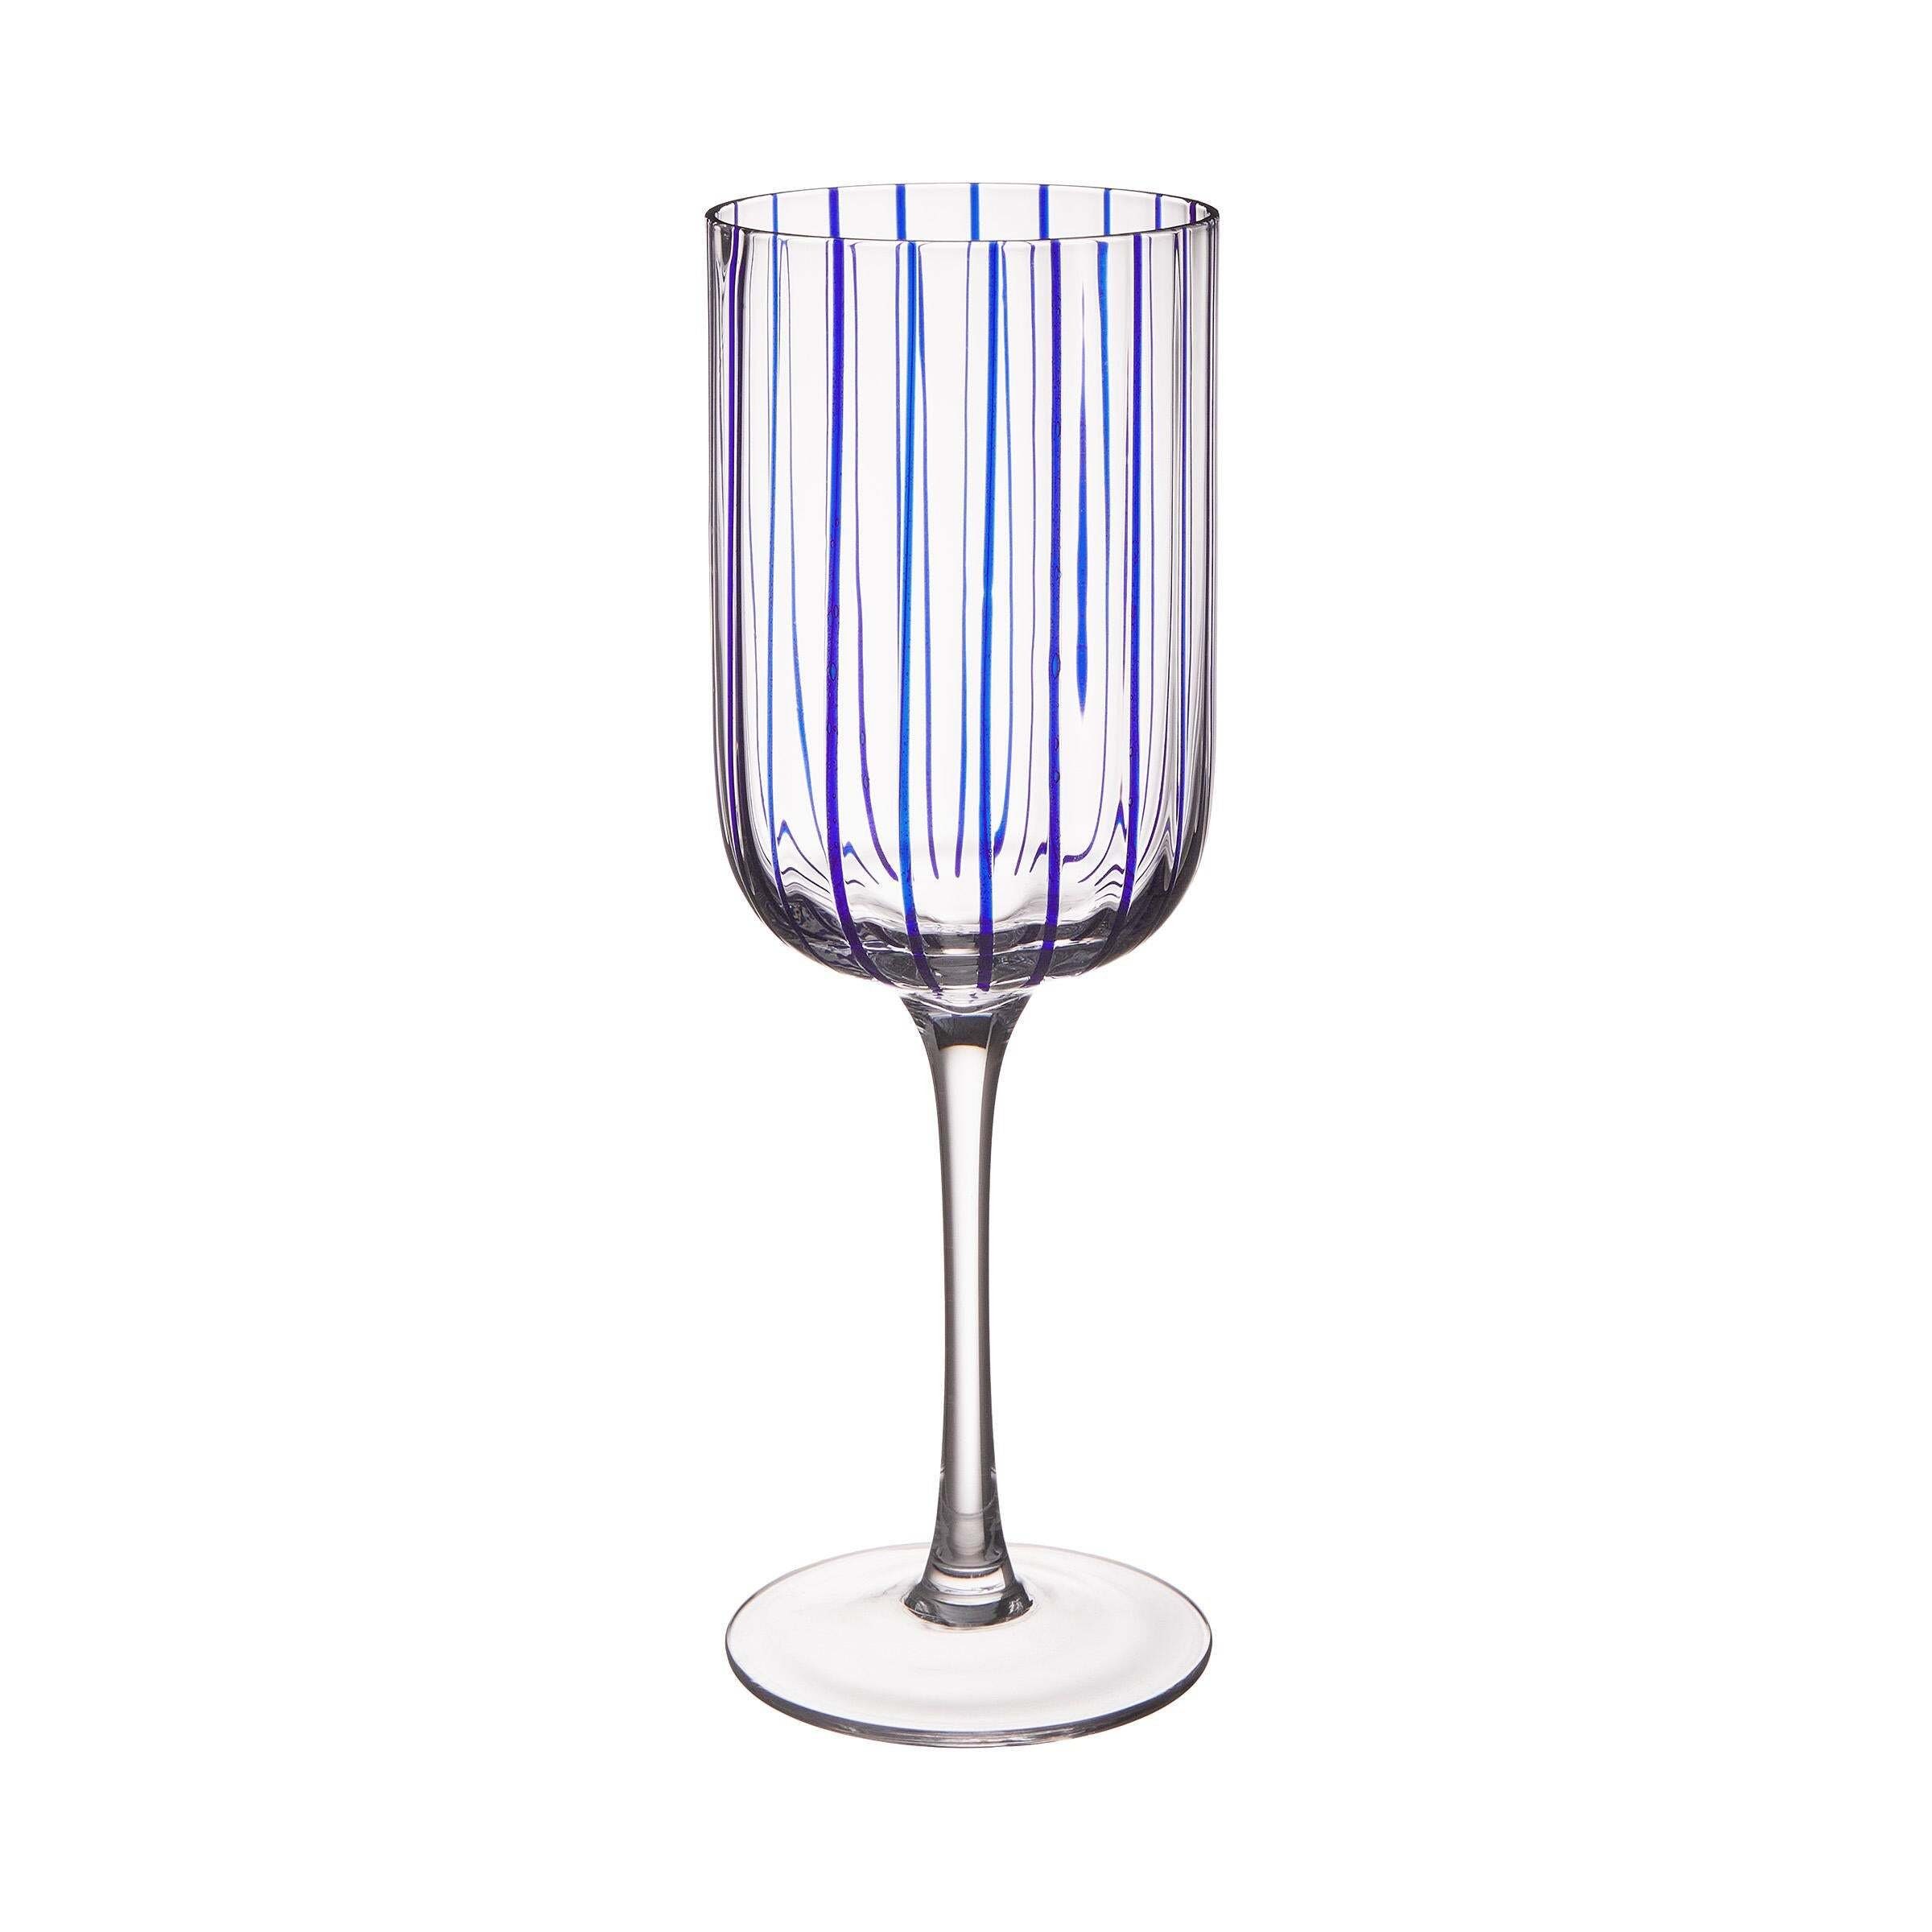 BUTLERS Weinglas CHEERFUL Weinglas Streifen 380ml, Glas